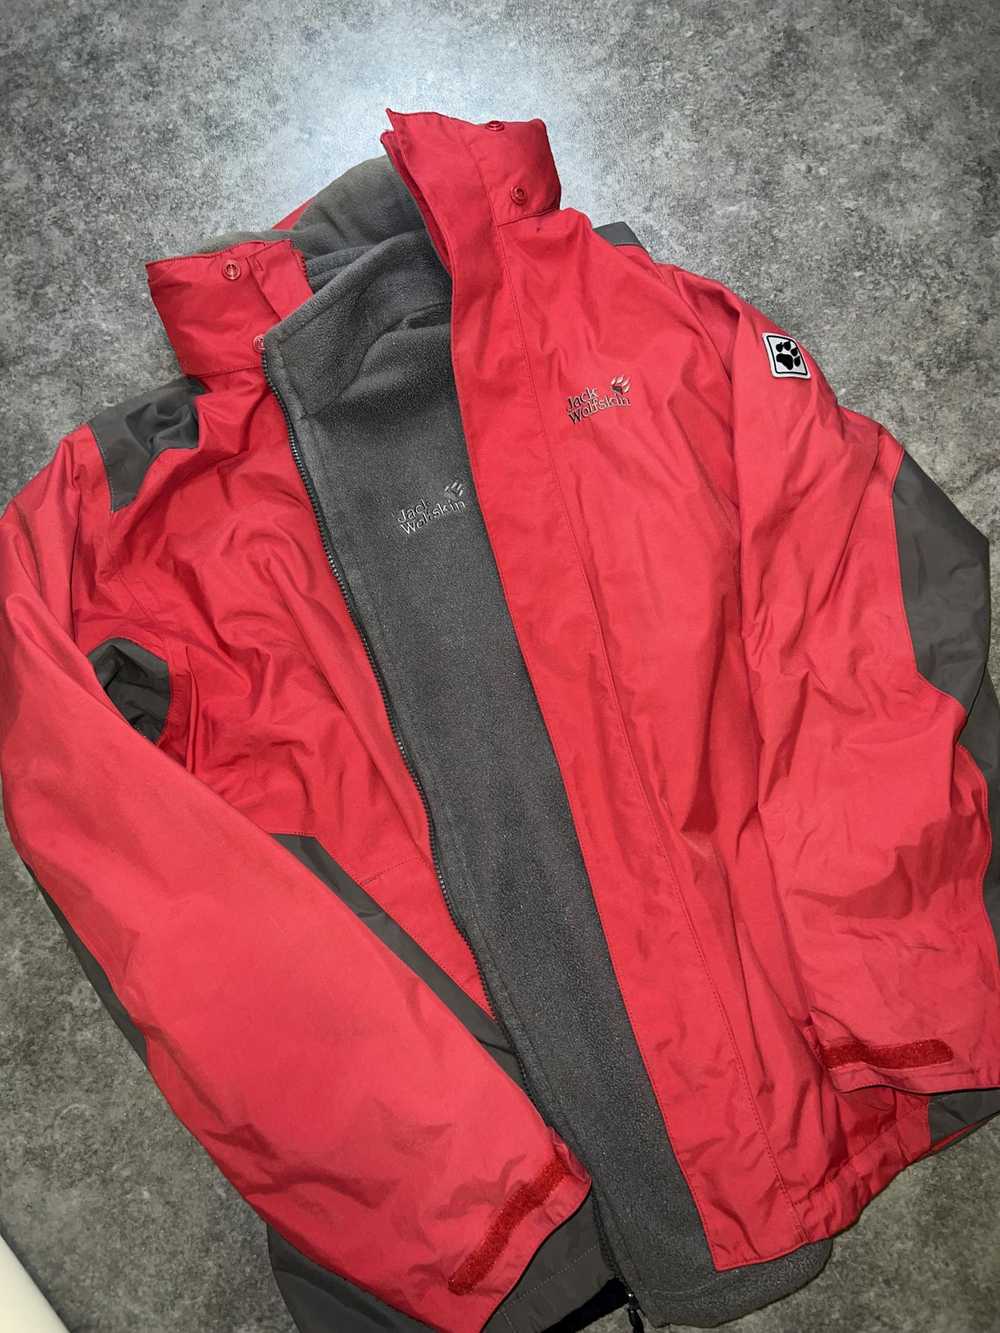 Jack Wolfskins jacket 1 in 3 Jack Wolfskins - image 5